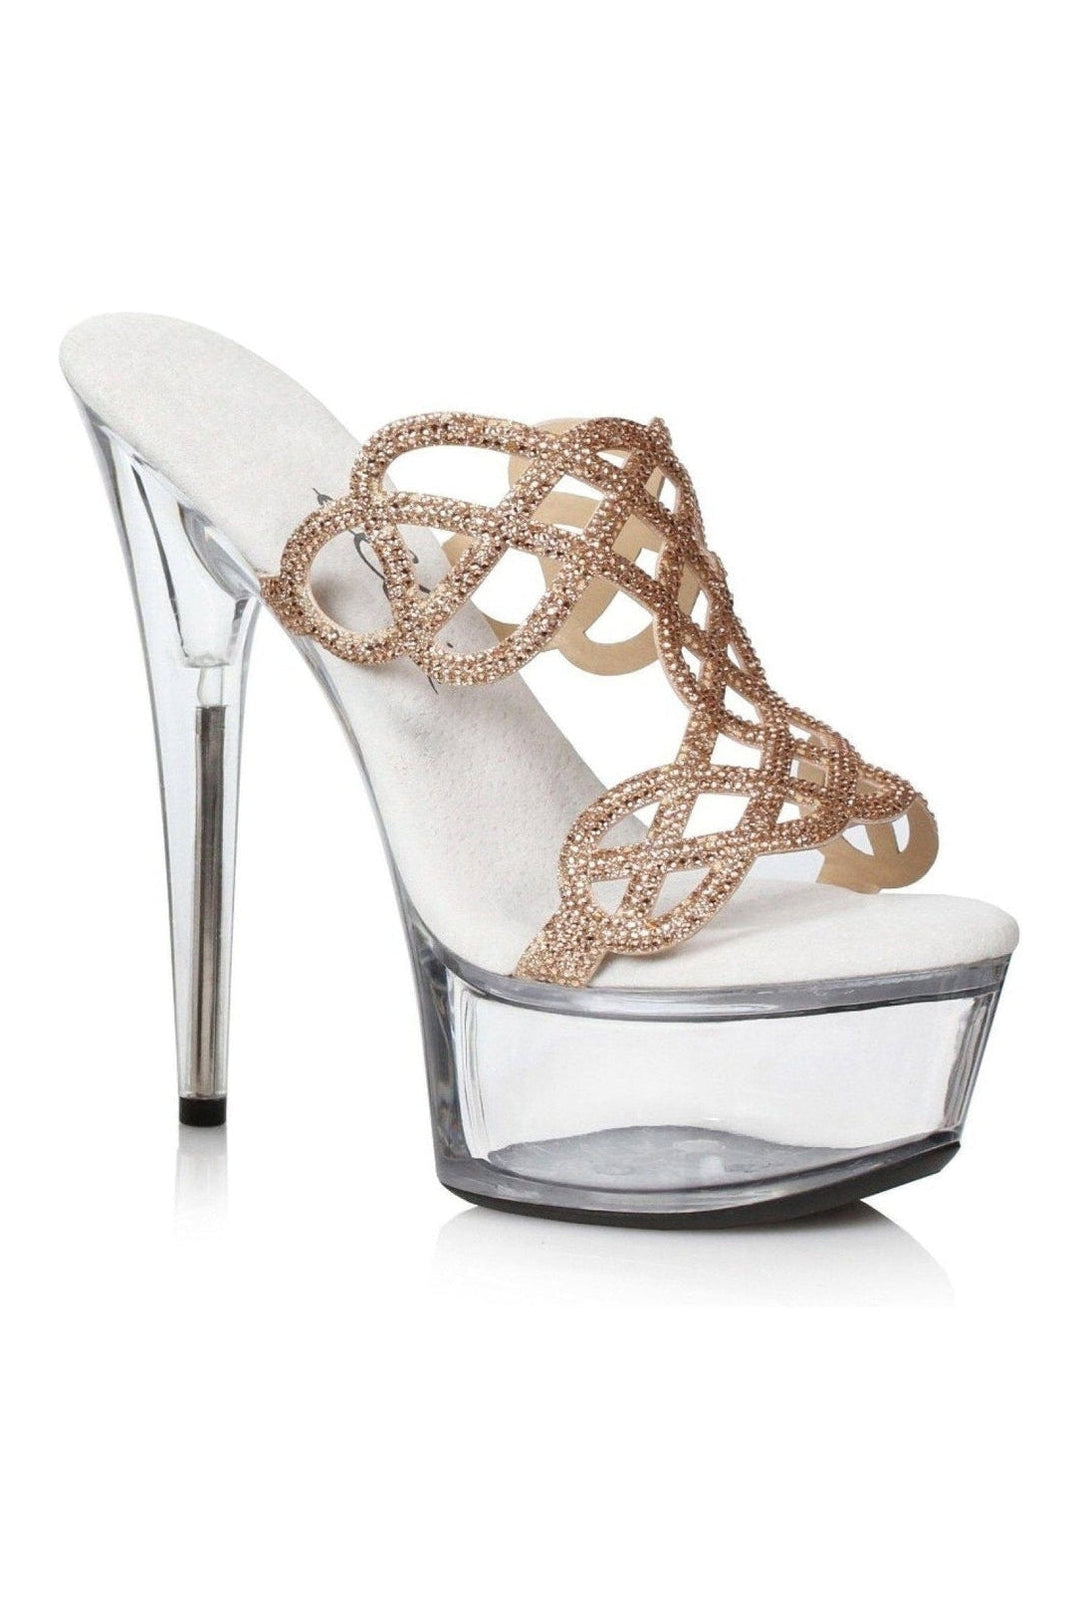 Ellie Shoes Gold Slides Platform Stripper Shoes | Buy at Sexyshoes.com